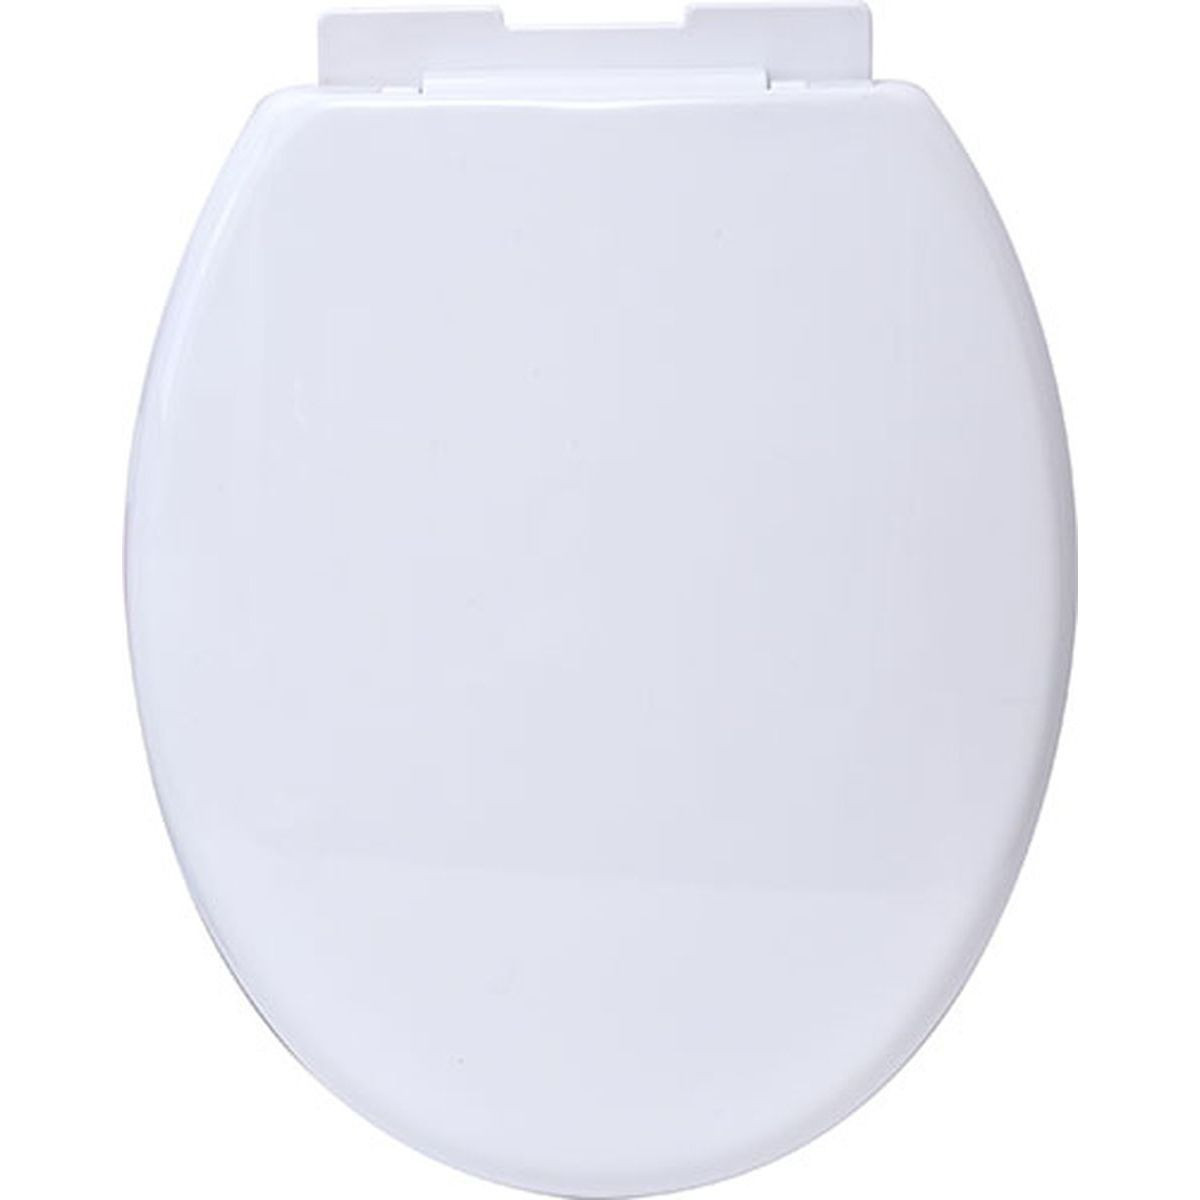 Blanc lunette de toilette clipsable plastique cuvette WC salle de